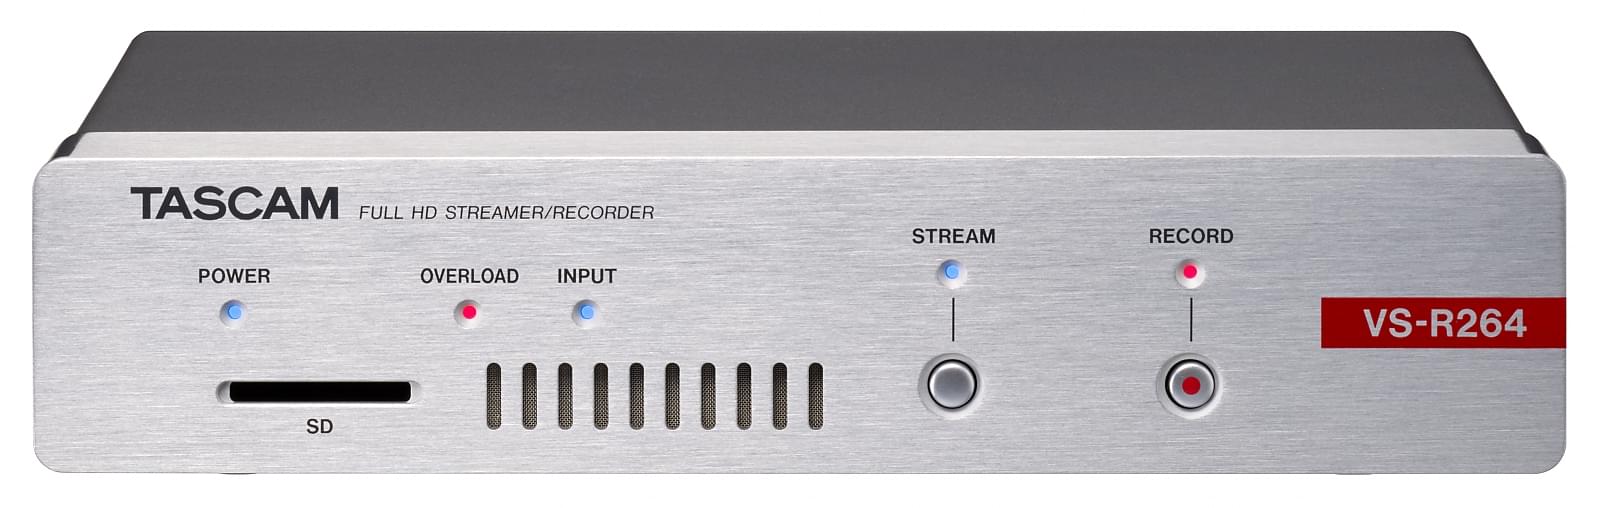 Full HD Video Streamer/Recorder | Tascam VS-R264